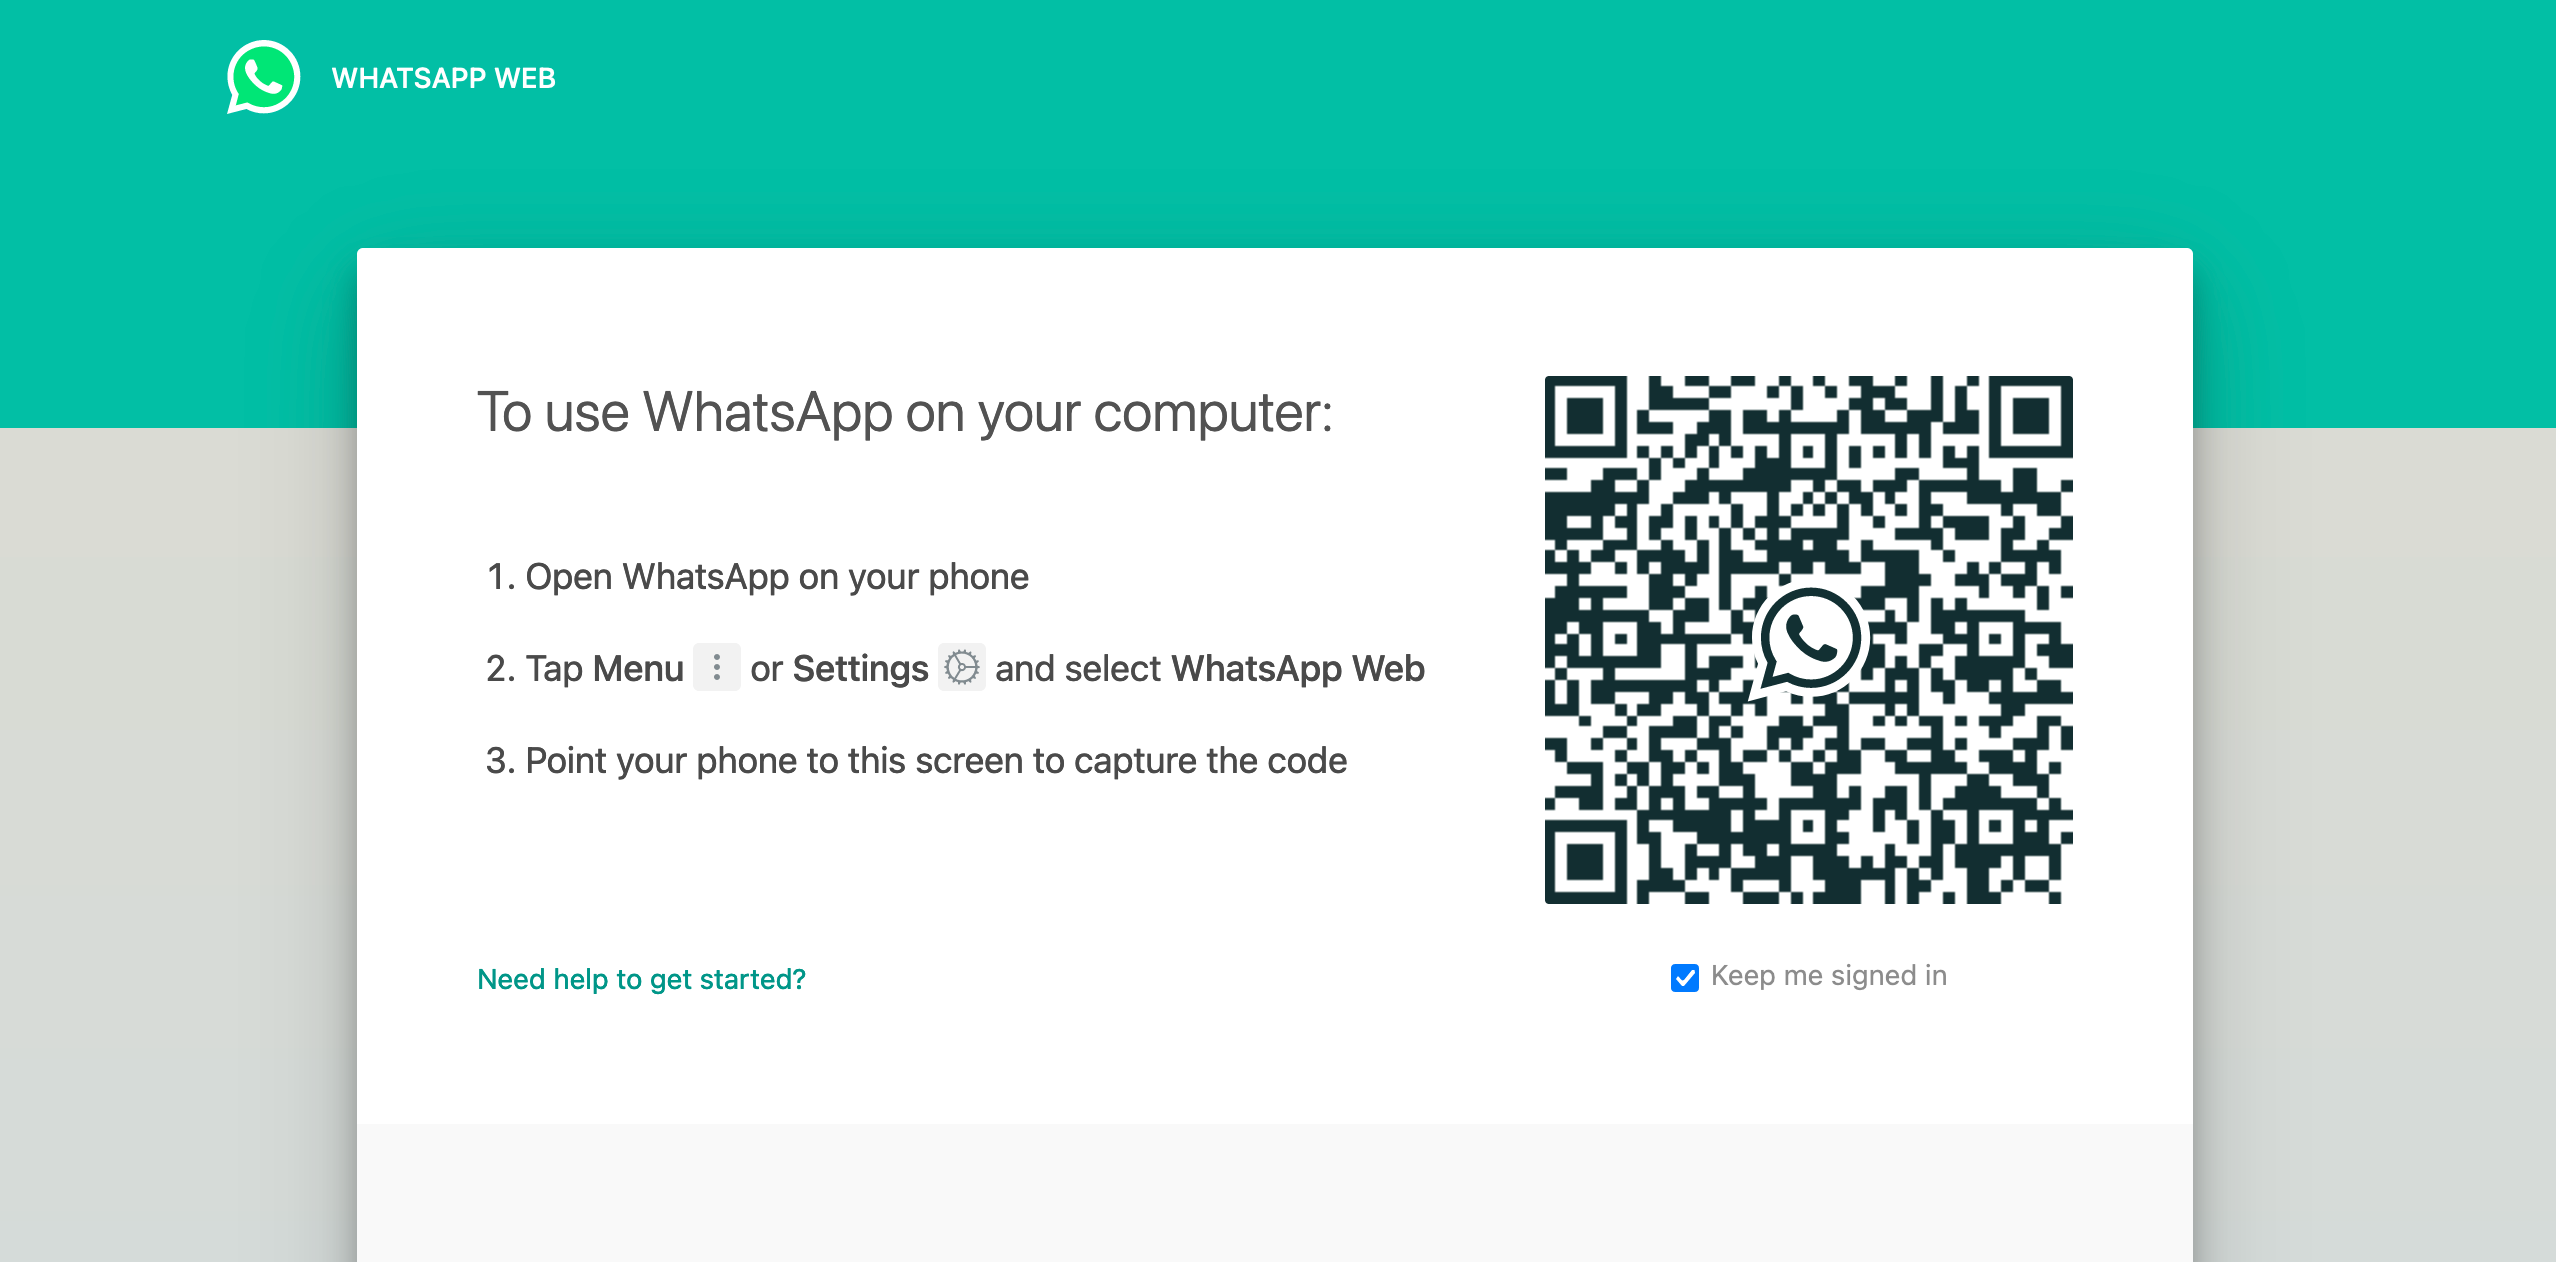 È sicuro utilizzare WhatsApp? 6 truffe, minacce e rischi per la sicurezza da conoscere